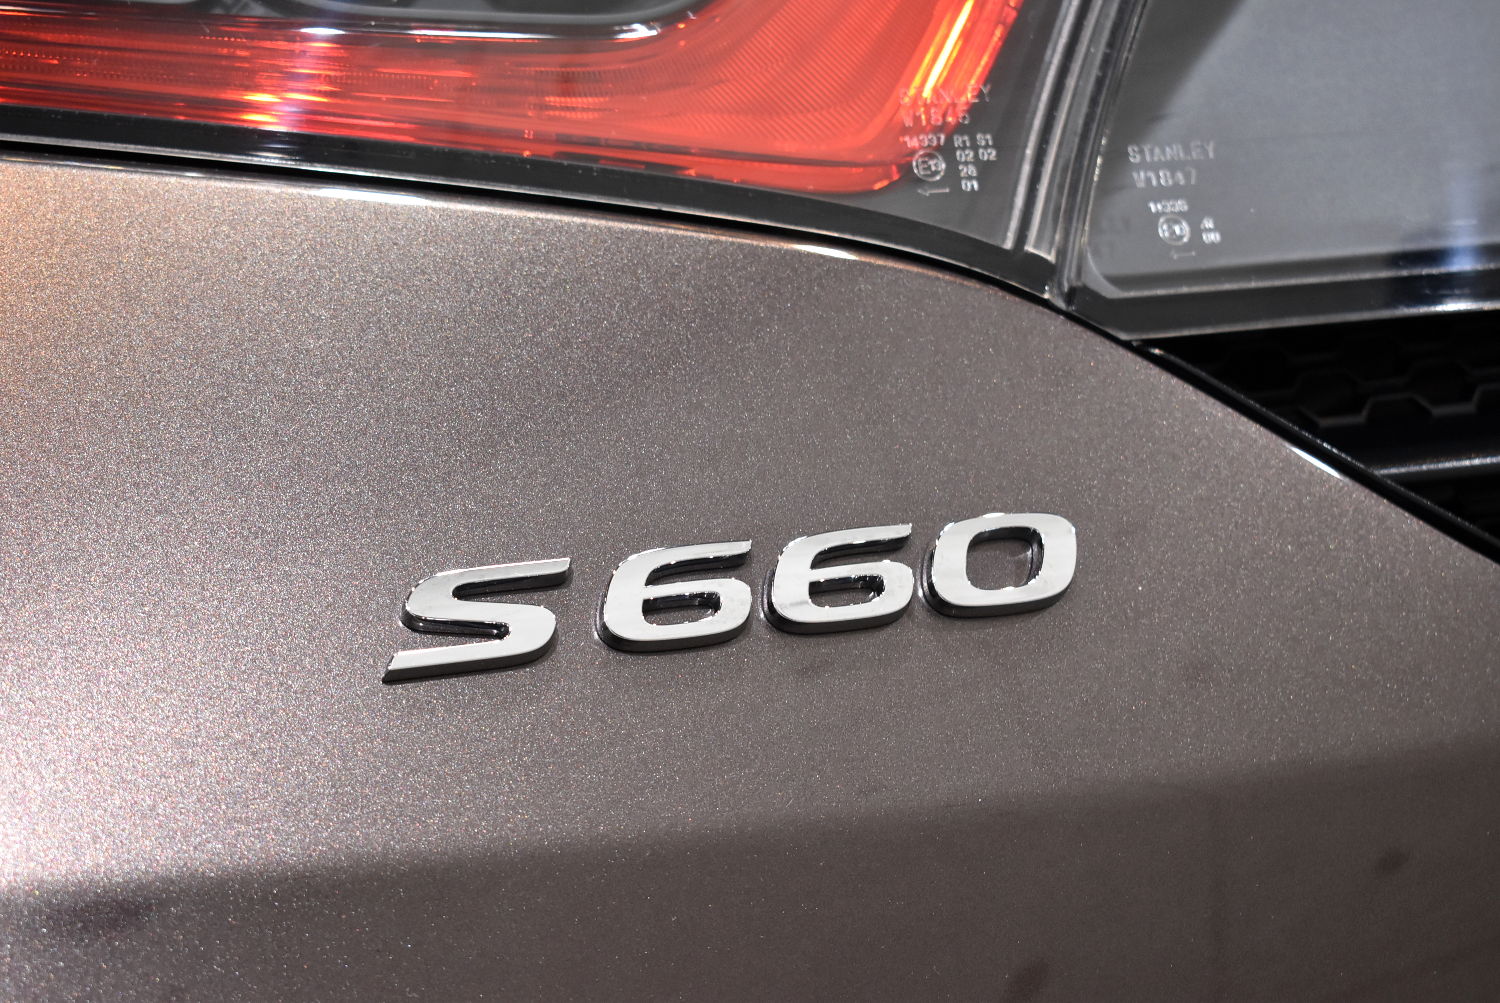 S660-9